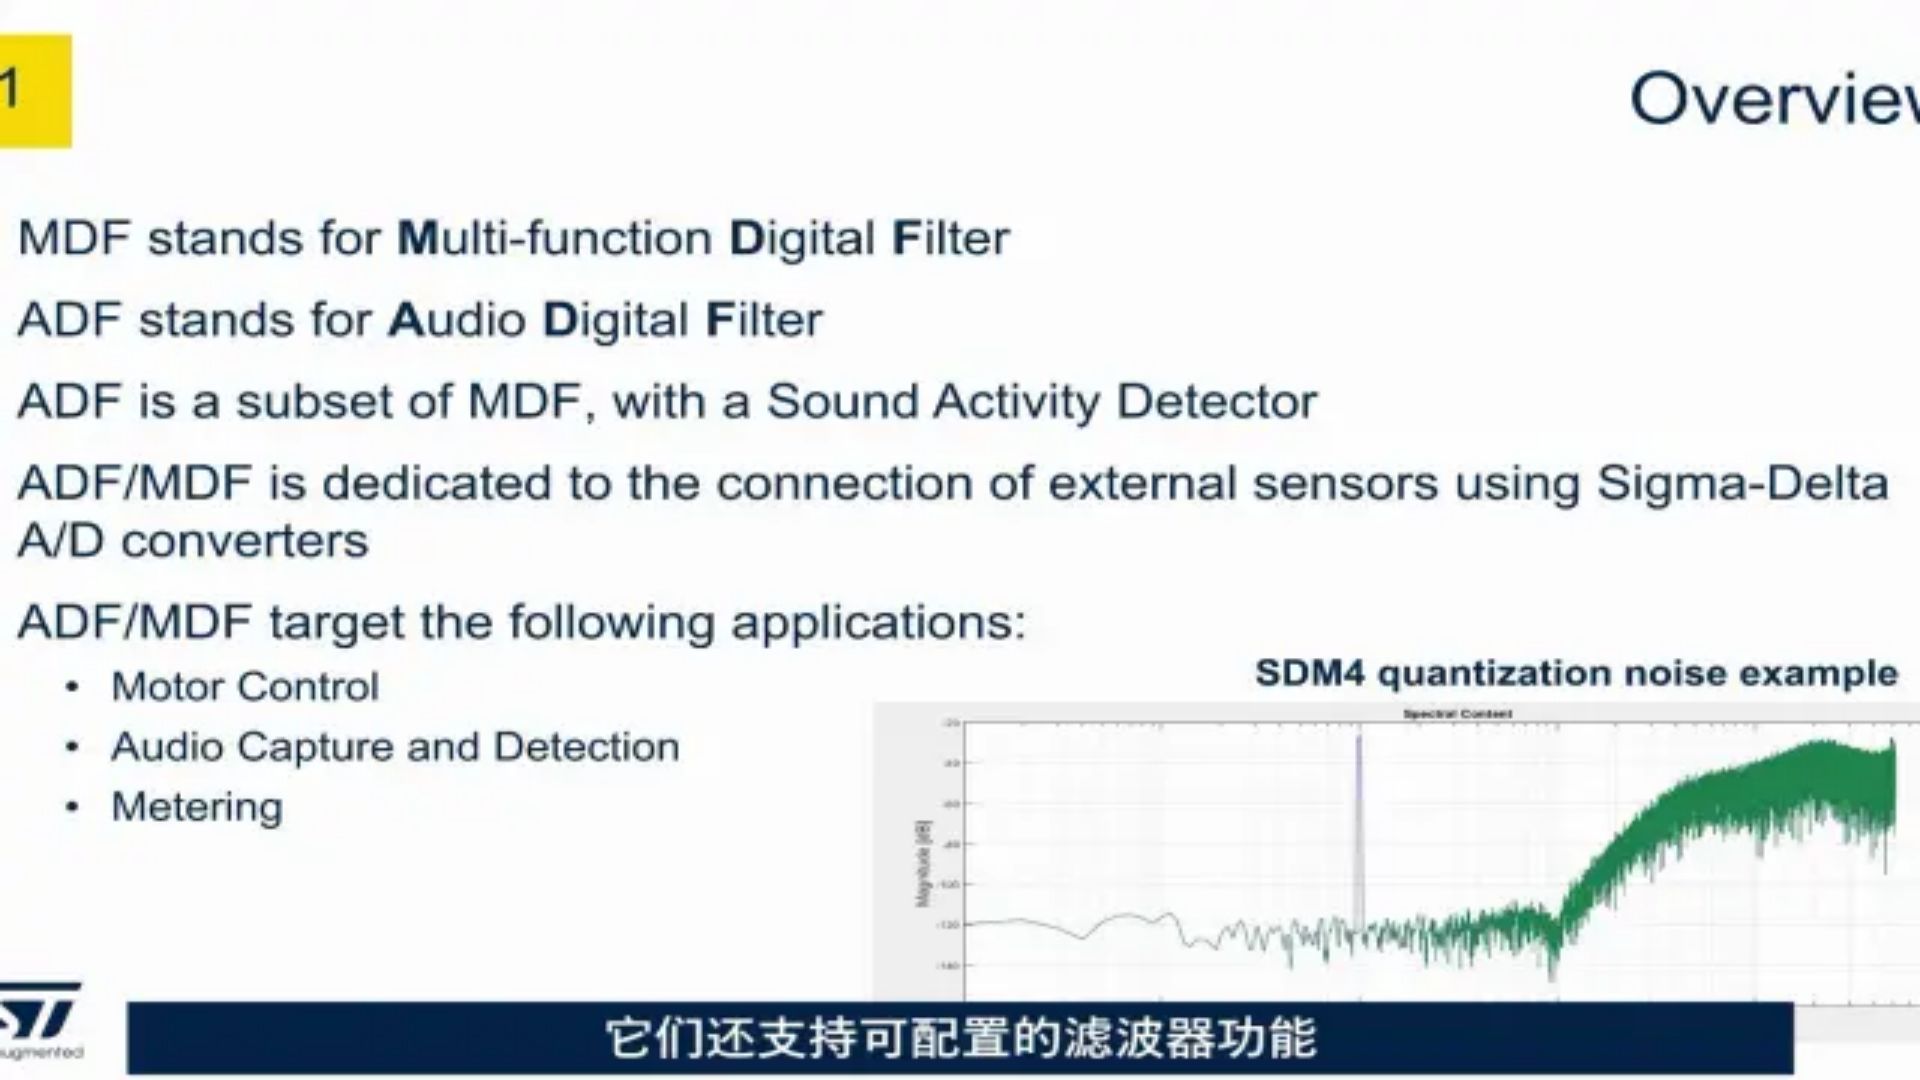 【STM32U5线上课程系列】第六章 外围设备：多功能数字滤波器和音频数字滤波器